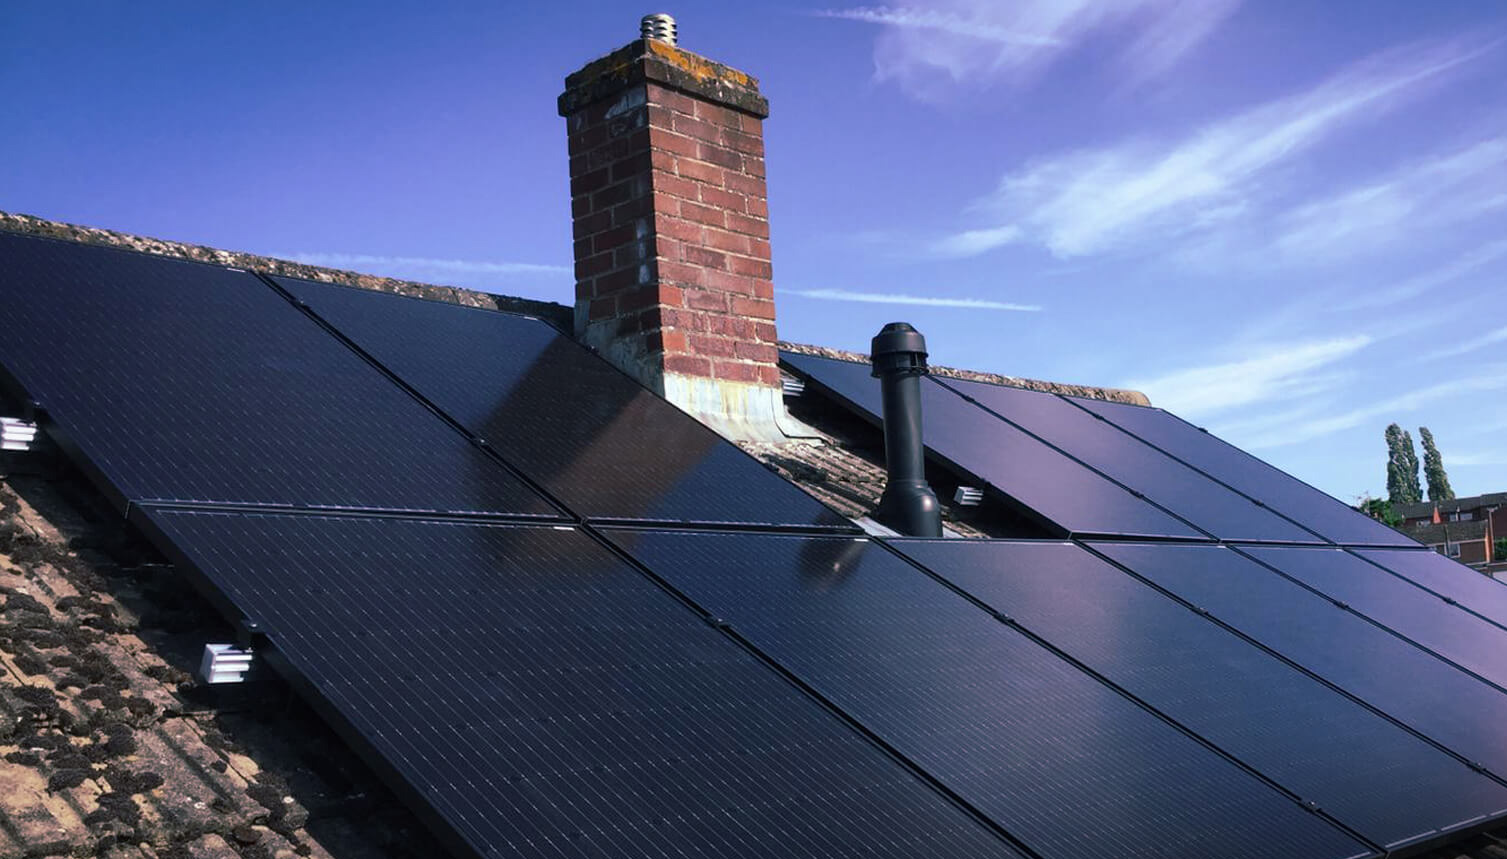 instalacia-solarnych-panelov-na-zlu-strechu